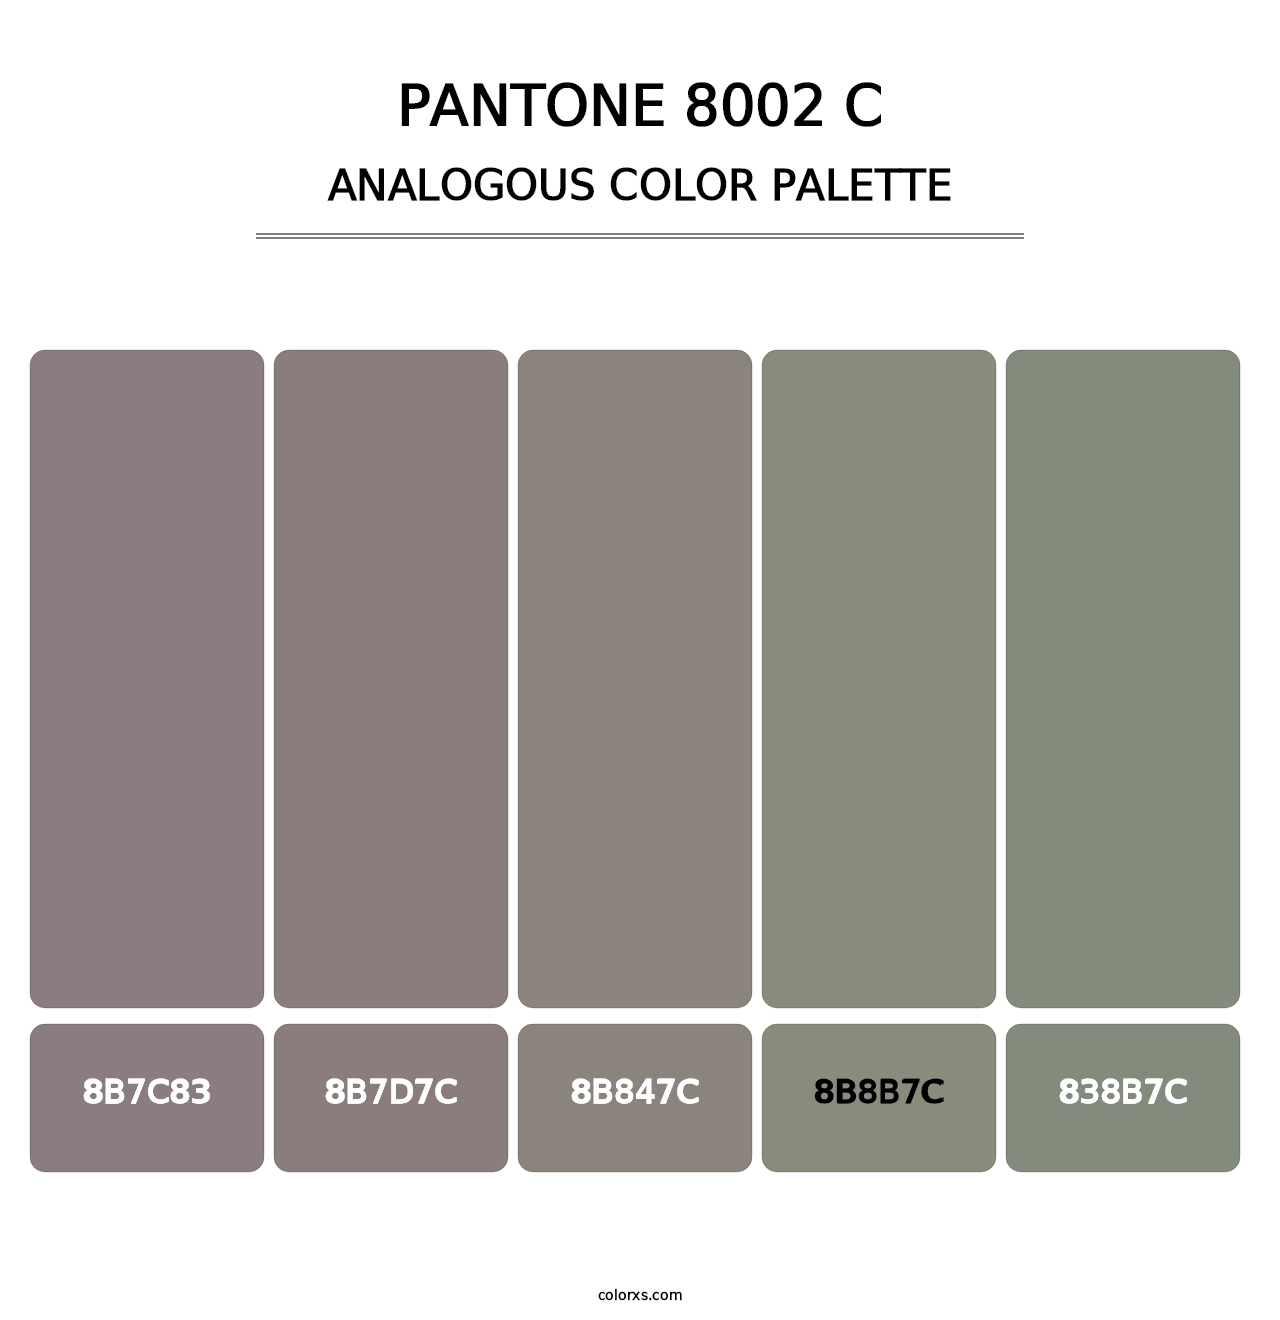 PANTONE 8002 C - Analogous Color Palette